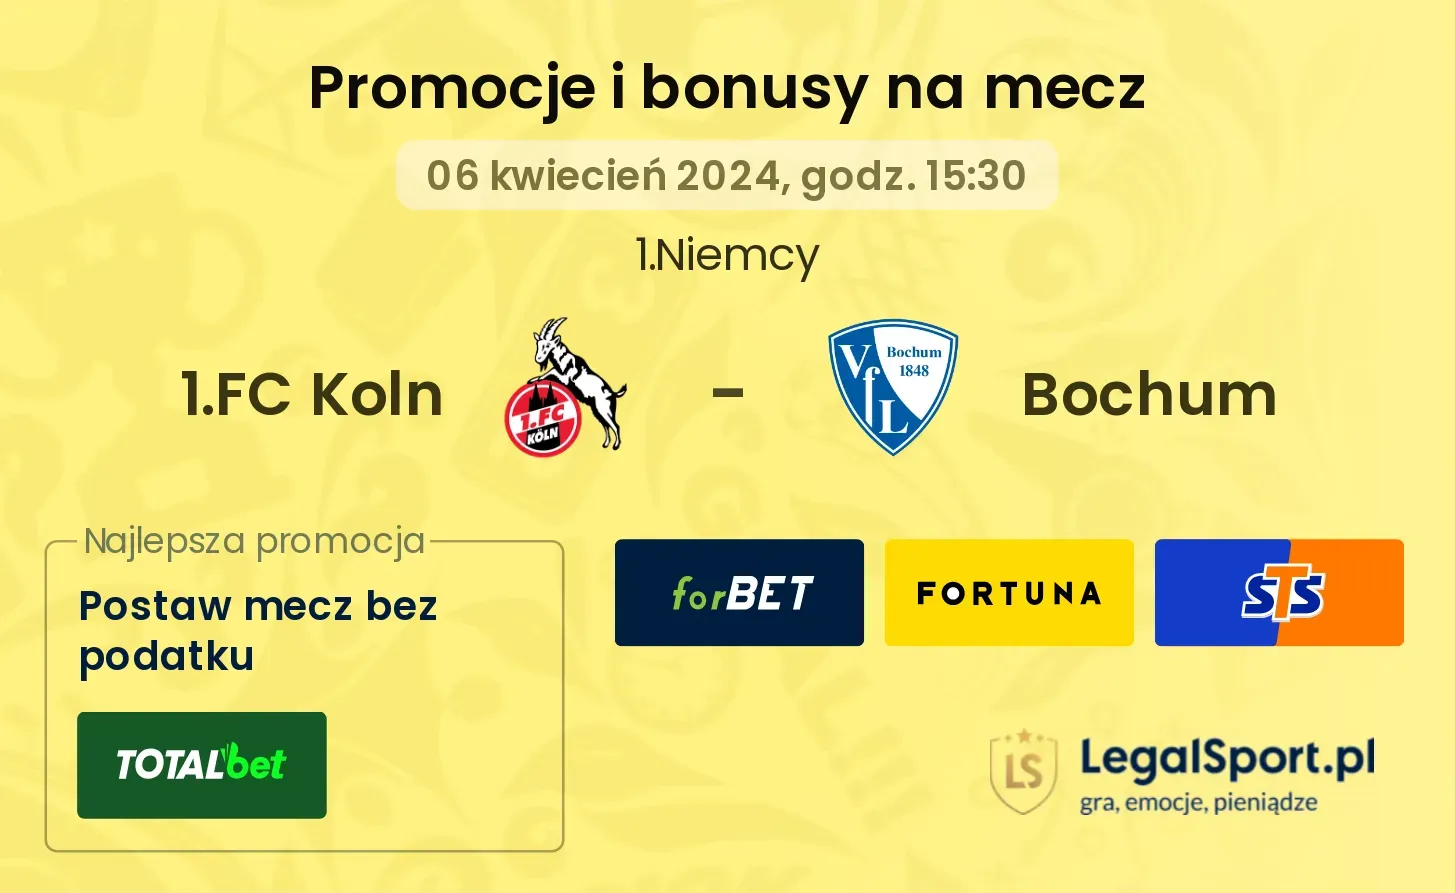 1.FC Koln - Bochum promocje bonusy na mecz